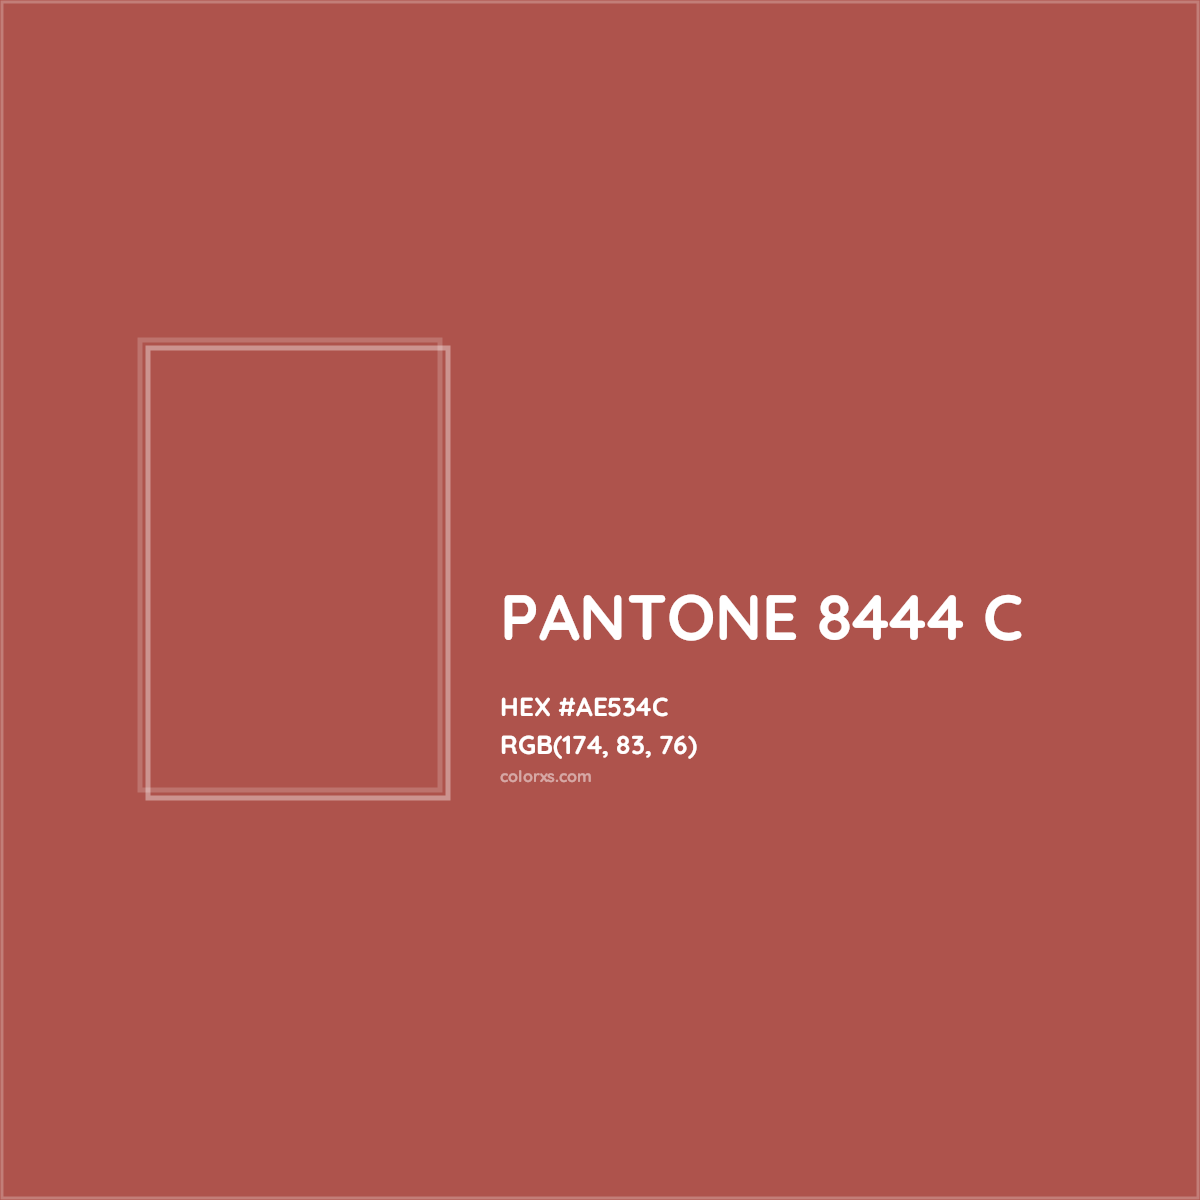 HEX #AE534C PANTONE 8444 C CMS Pantone PMS - Color Code